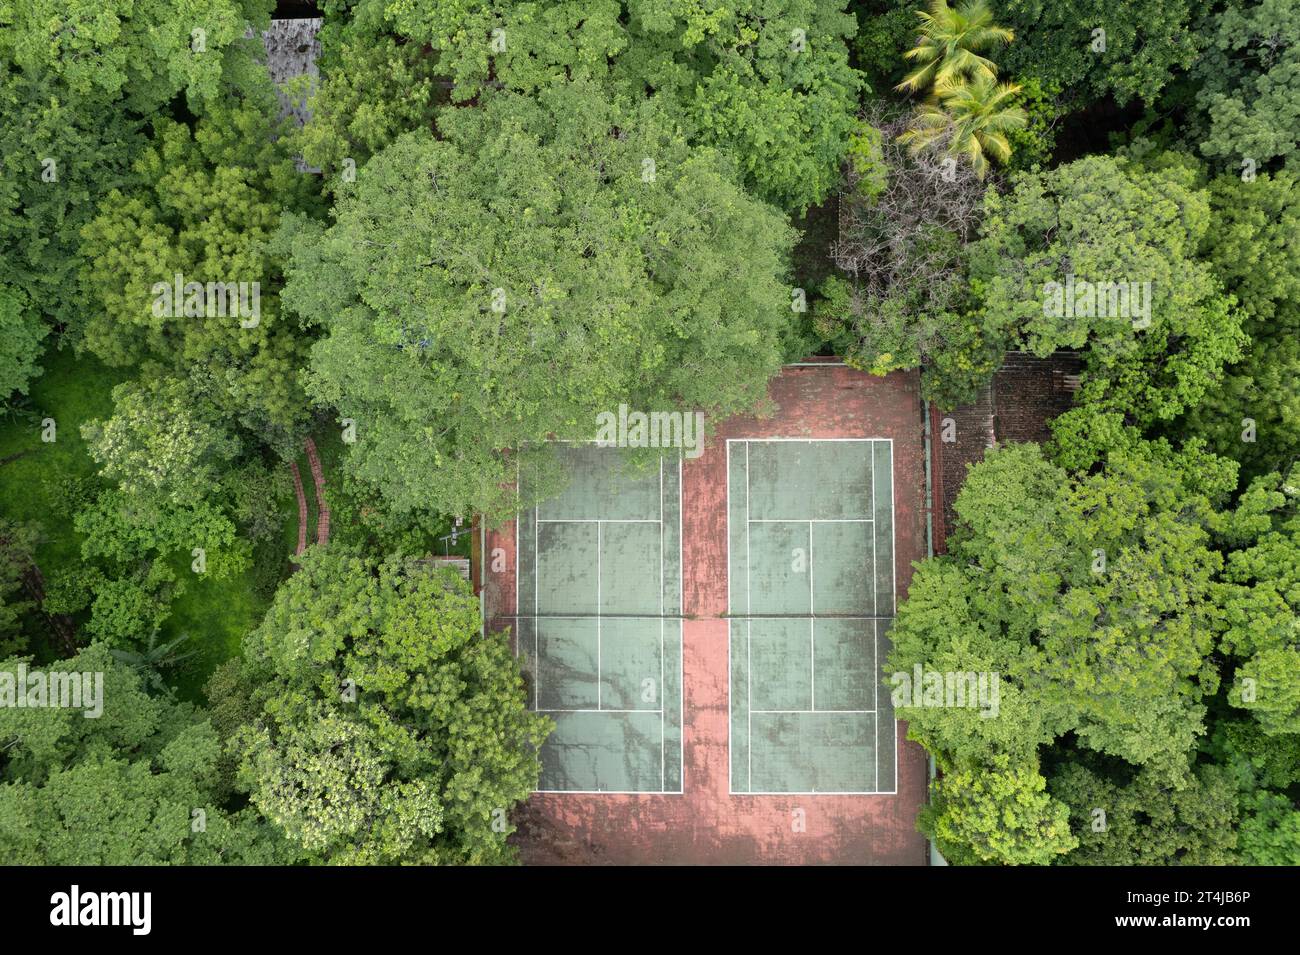 La fotografia aerea cattura un campo da tennis in argilla rossa annidato nel mezzo di una fitta foresta. Il campo e' segnato da linee bianche ed e' circondato da alti, Foto Stock